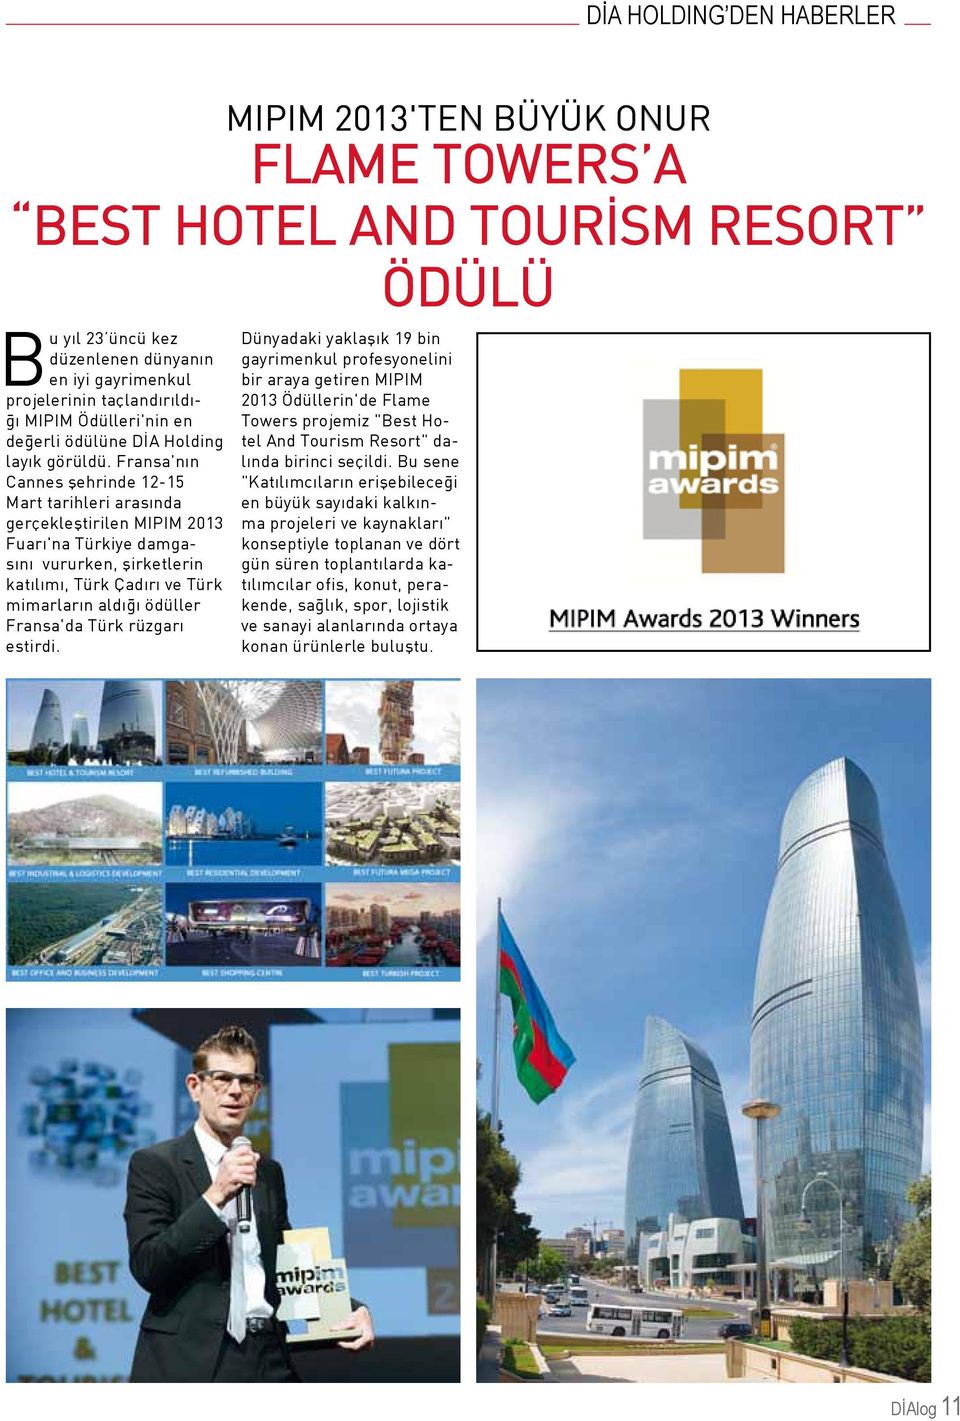 Fransa'nın Cannes şehrinde 12-15 Mart tarihleri arasında gerçekleştirilen MIPIM 2013 Fuarı'na Türkiye damgasını vururken, şirketlerin katılımı, Türk Çadırı ve Türk mimarların aldığı ödüller Fransa'da